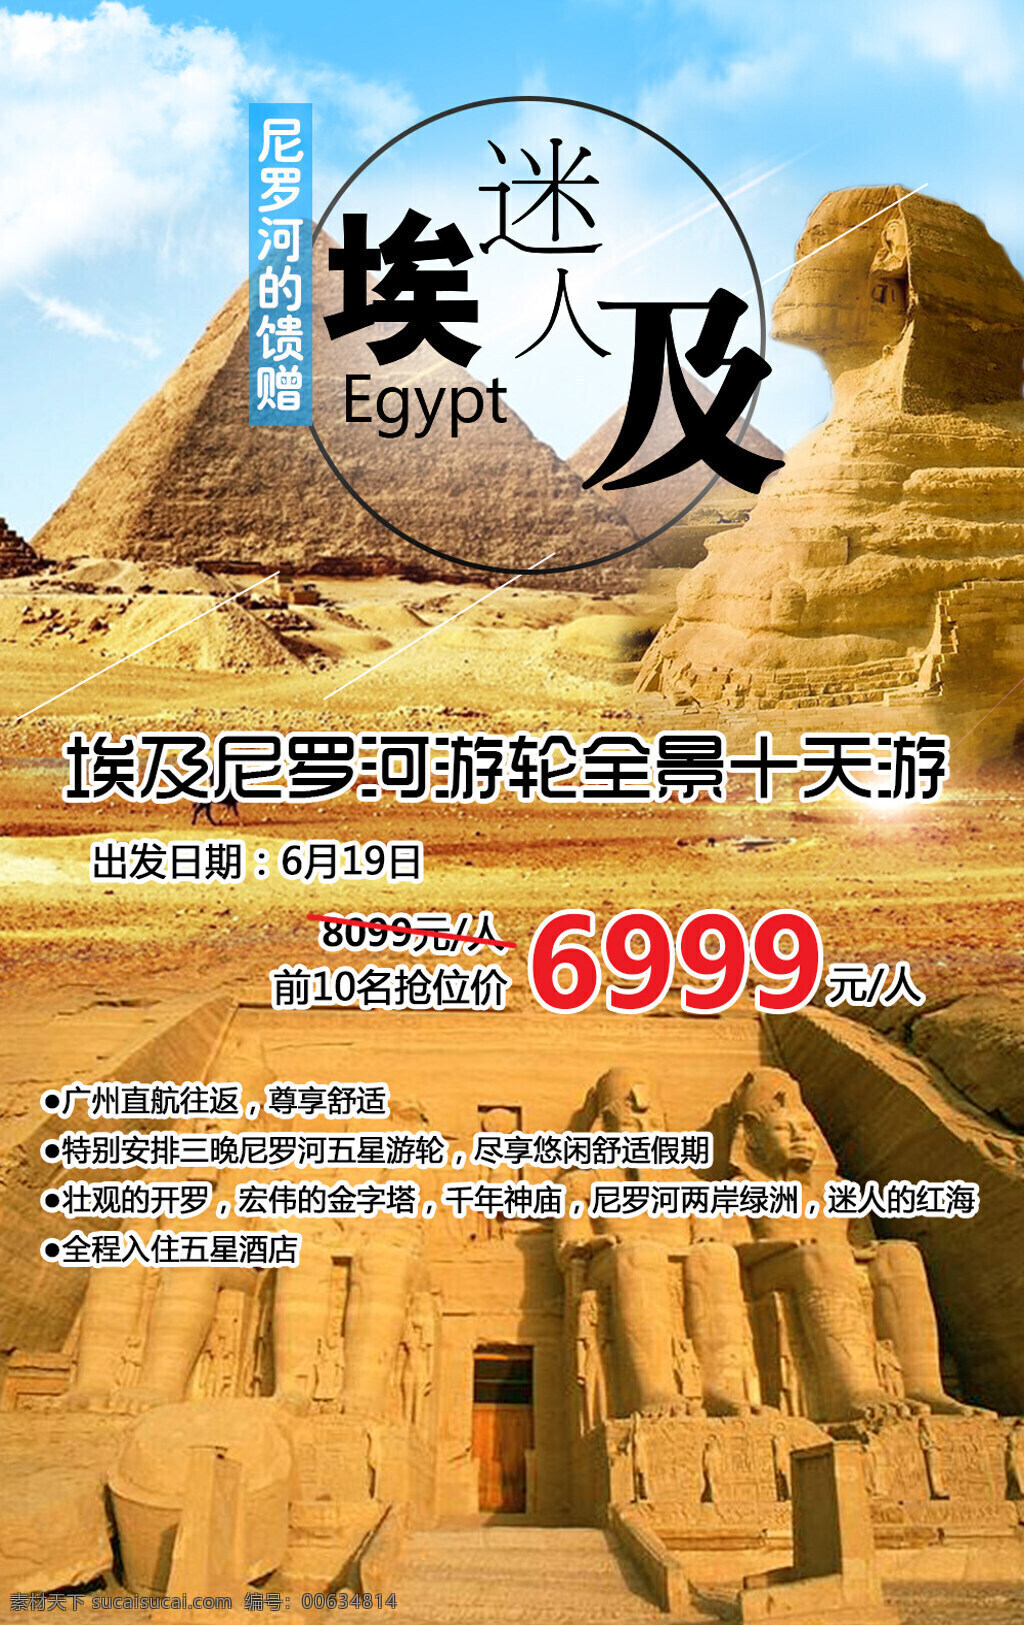 埃及旅游海报 埃及 尼罗河 psd素材 单张 旅游